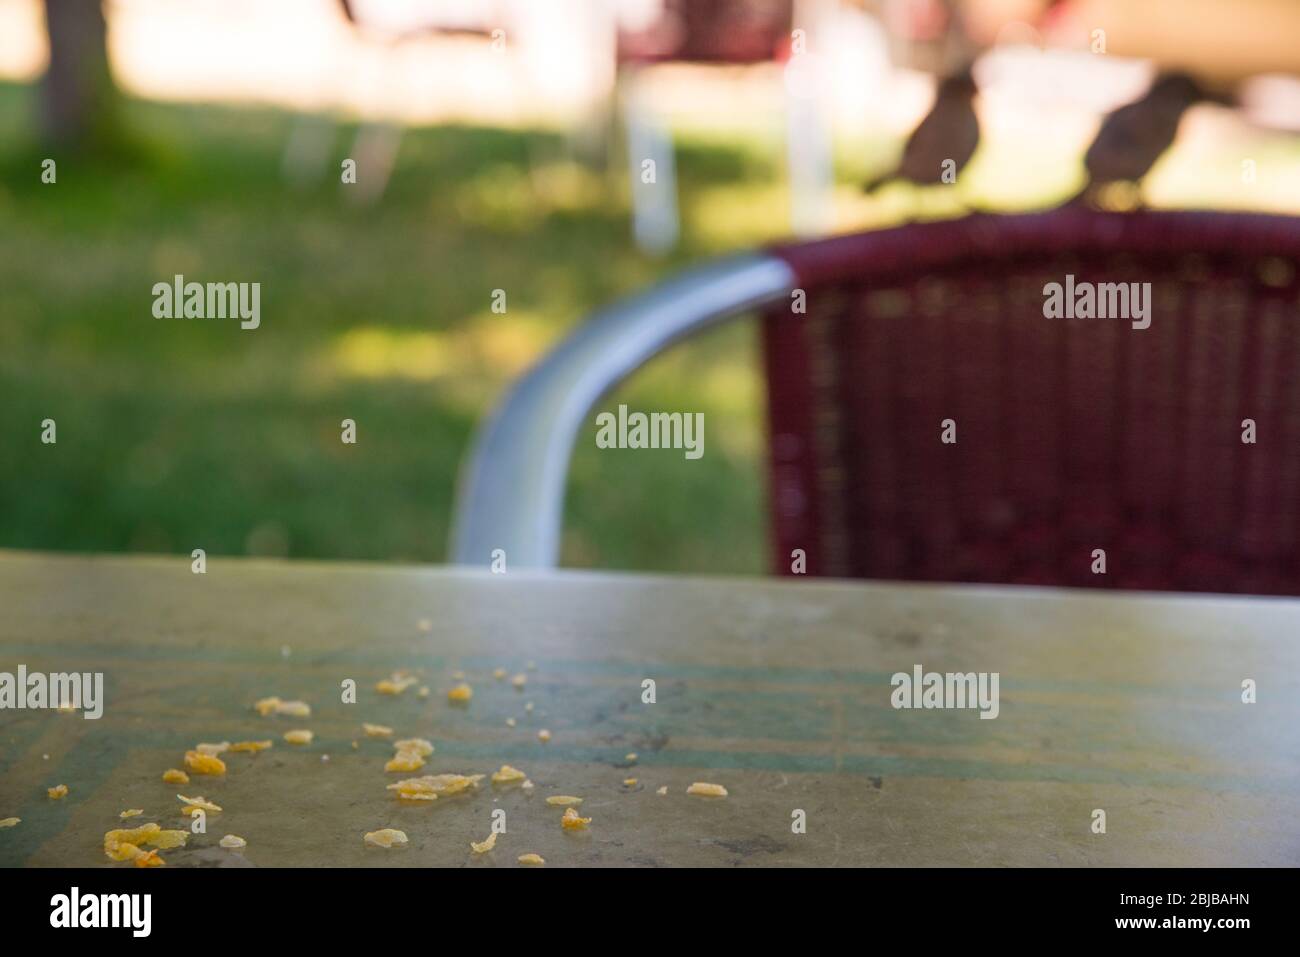 Nourrissant des oiseaux : deux moineaux sur une chaise, attendant de manger des crumbles sur la table d'une terrasse. Banque D'Images